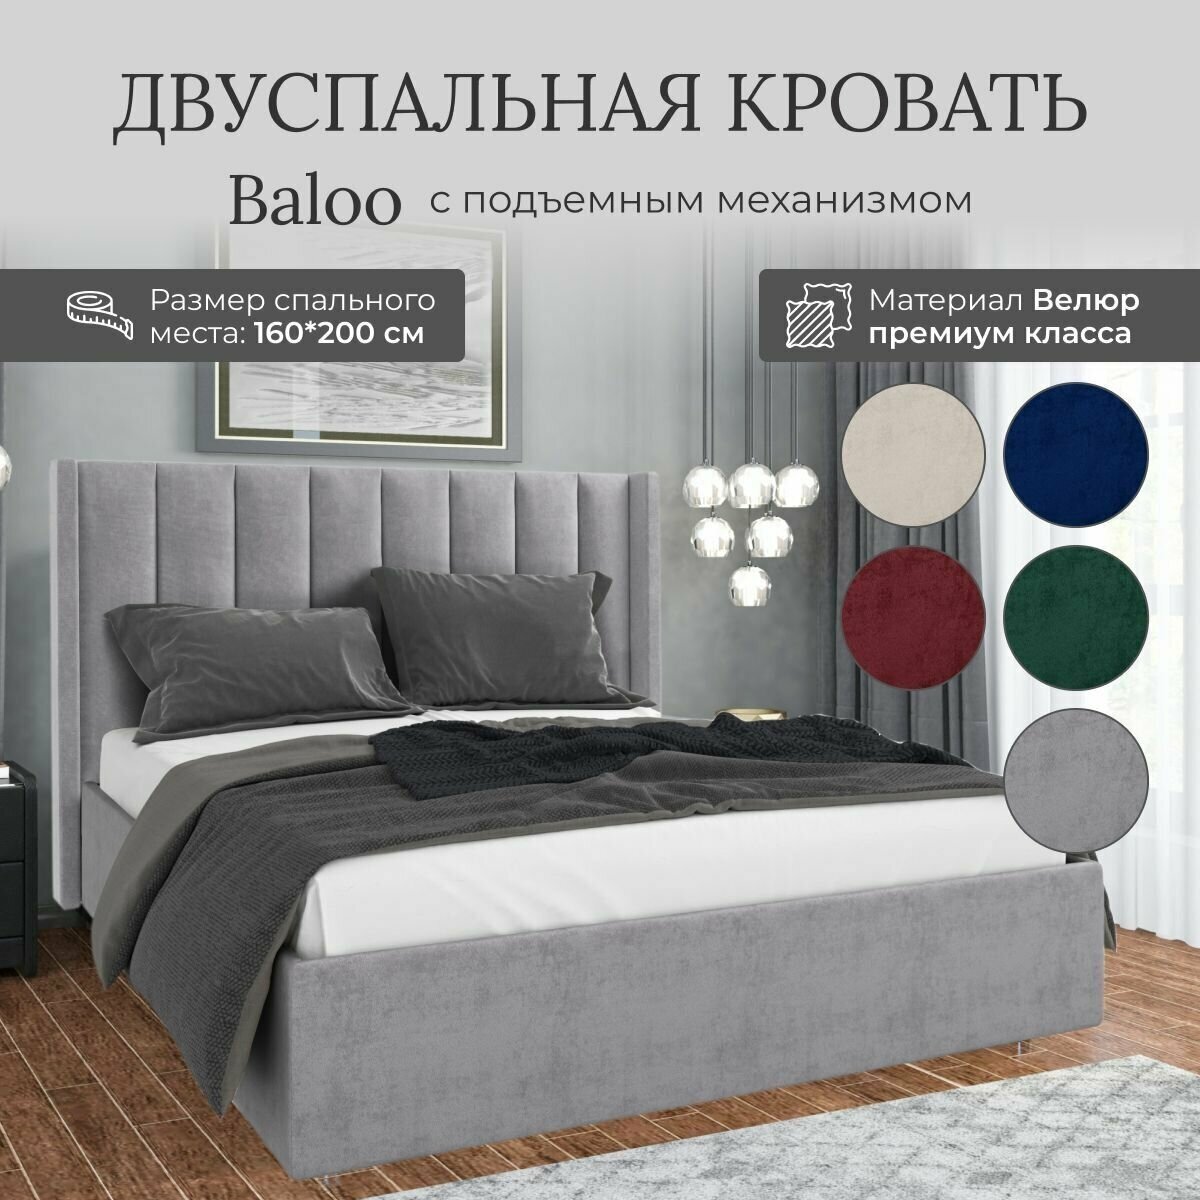 Кровать с подъемным механизмом Luxson Baloo двуспальная размер 160х200